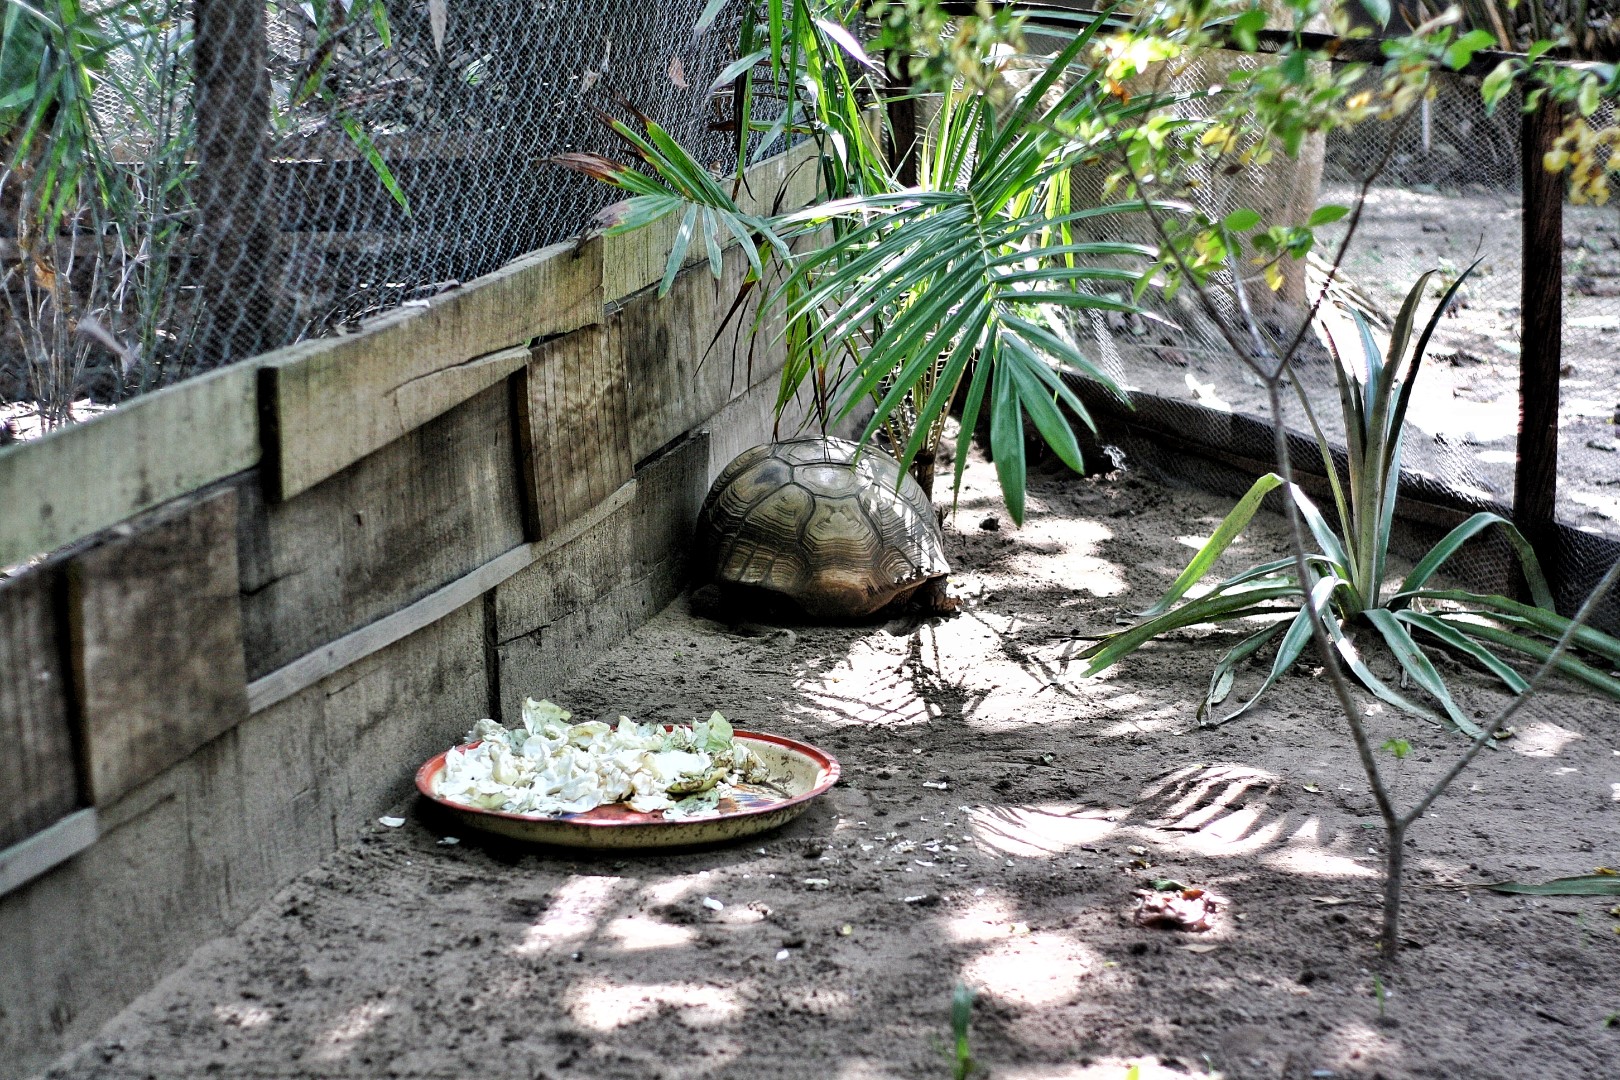 Tortoise in his habitat at the lufasi park in Lagos